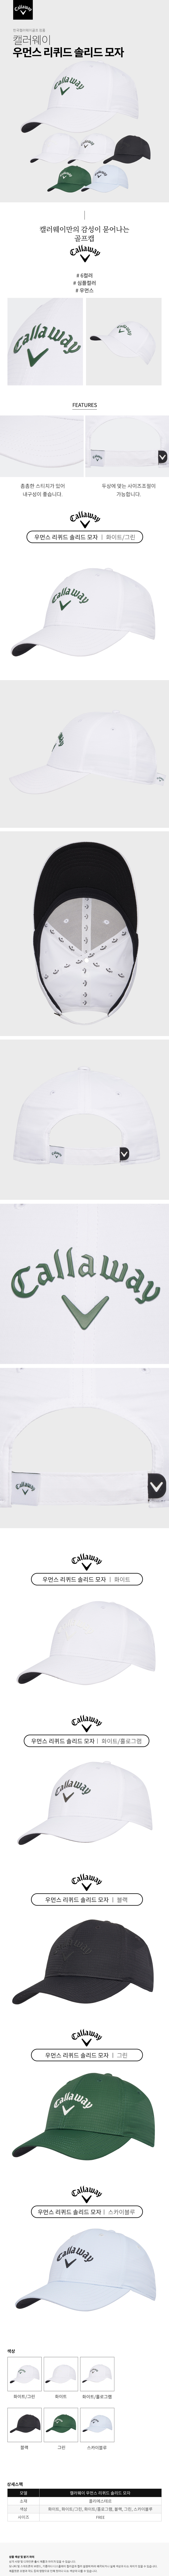 callaway_cg_w_liquid_solid_cap_23.jpg